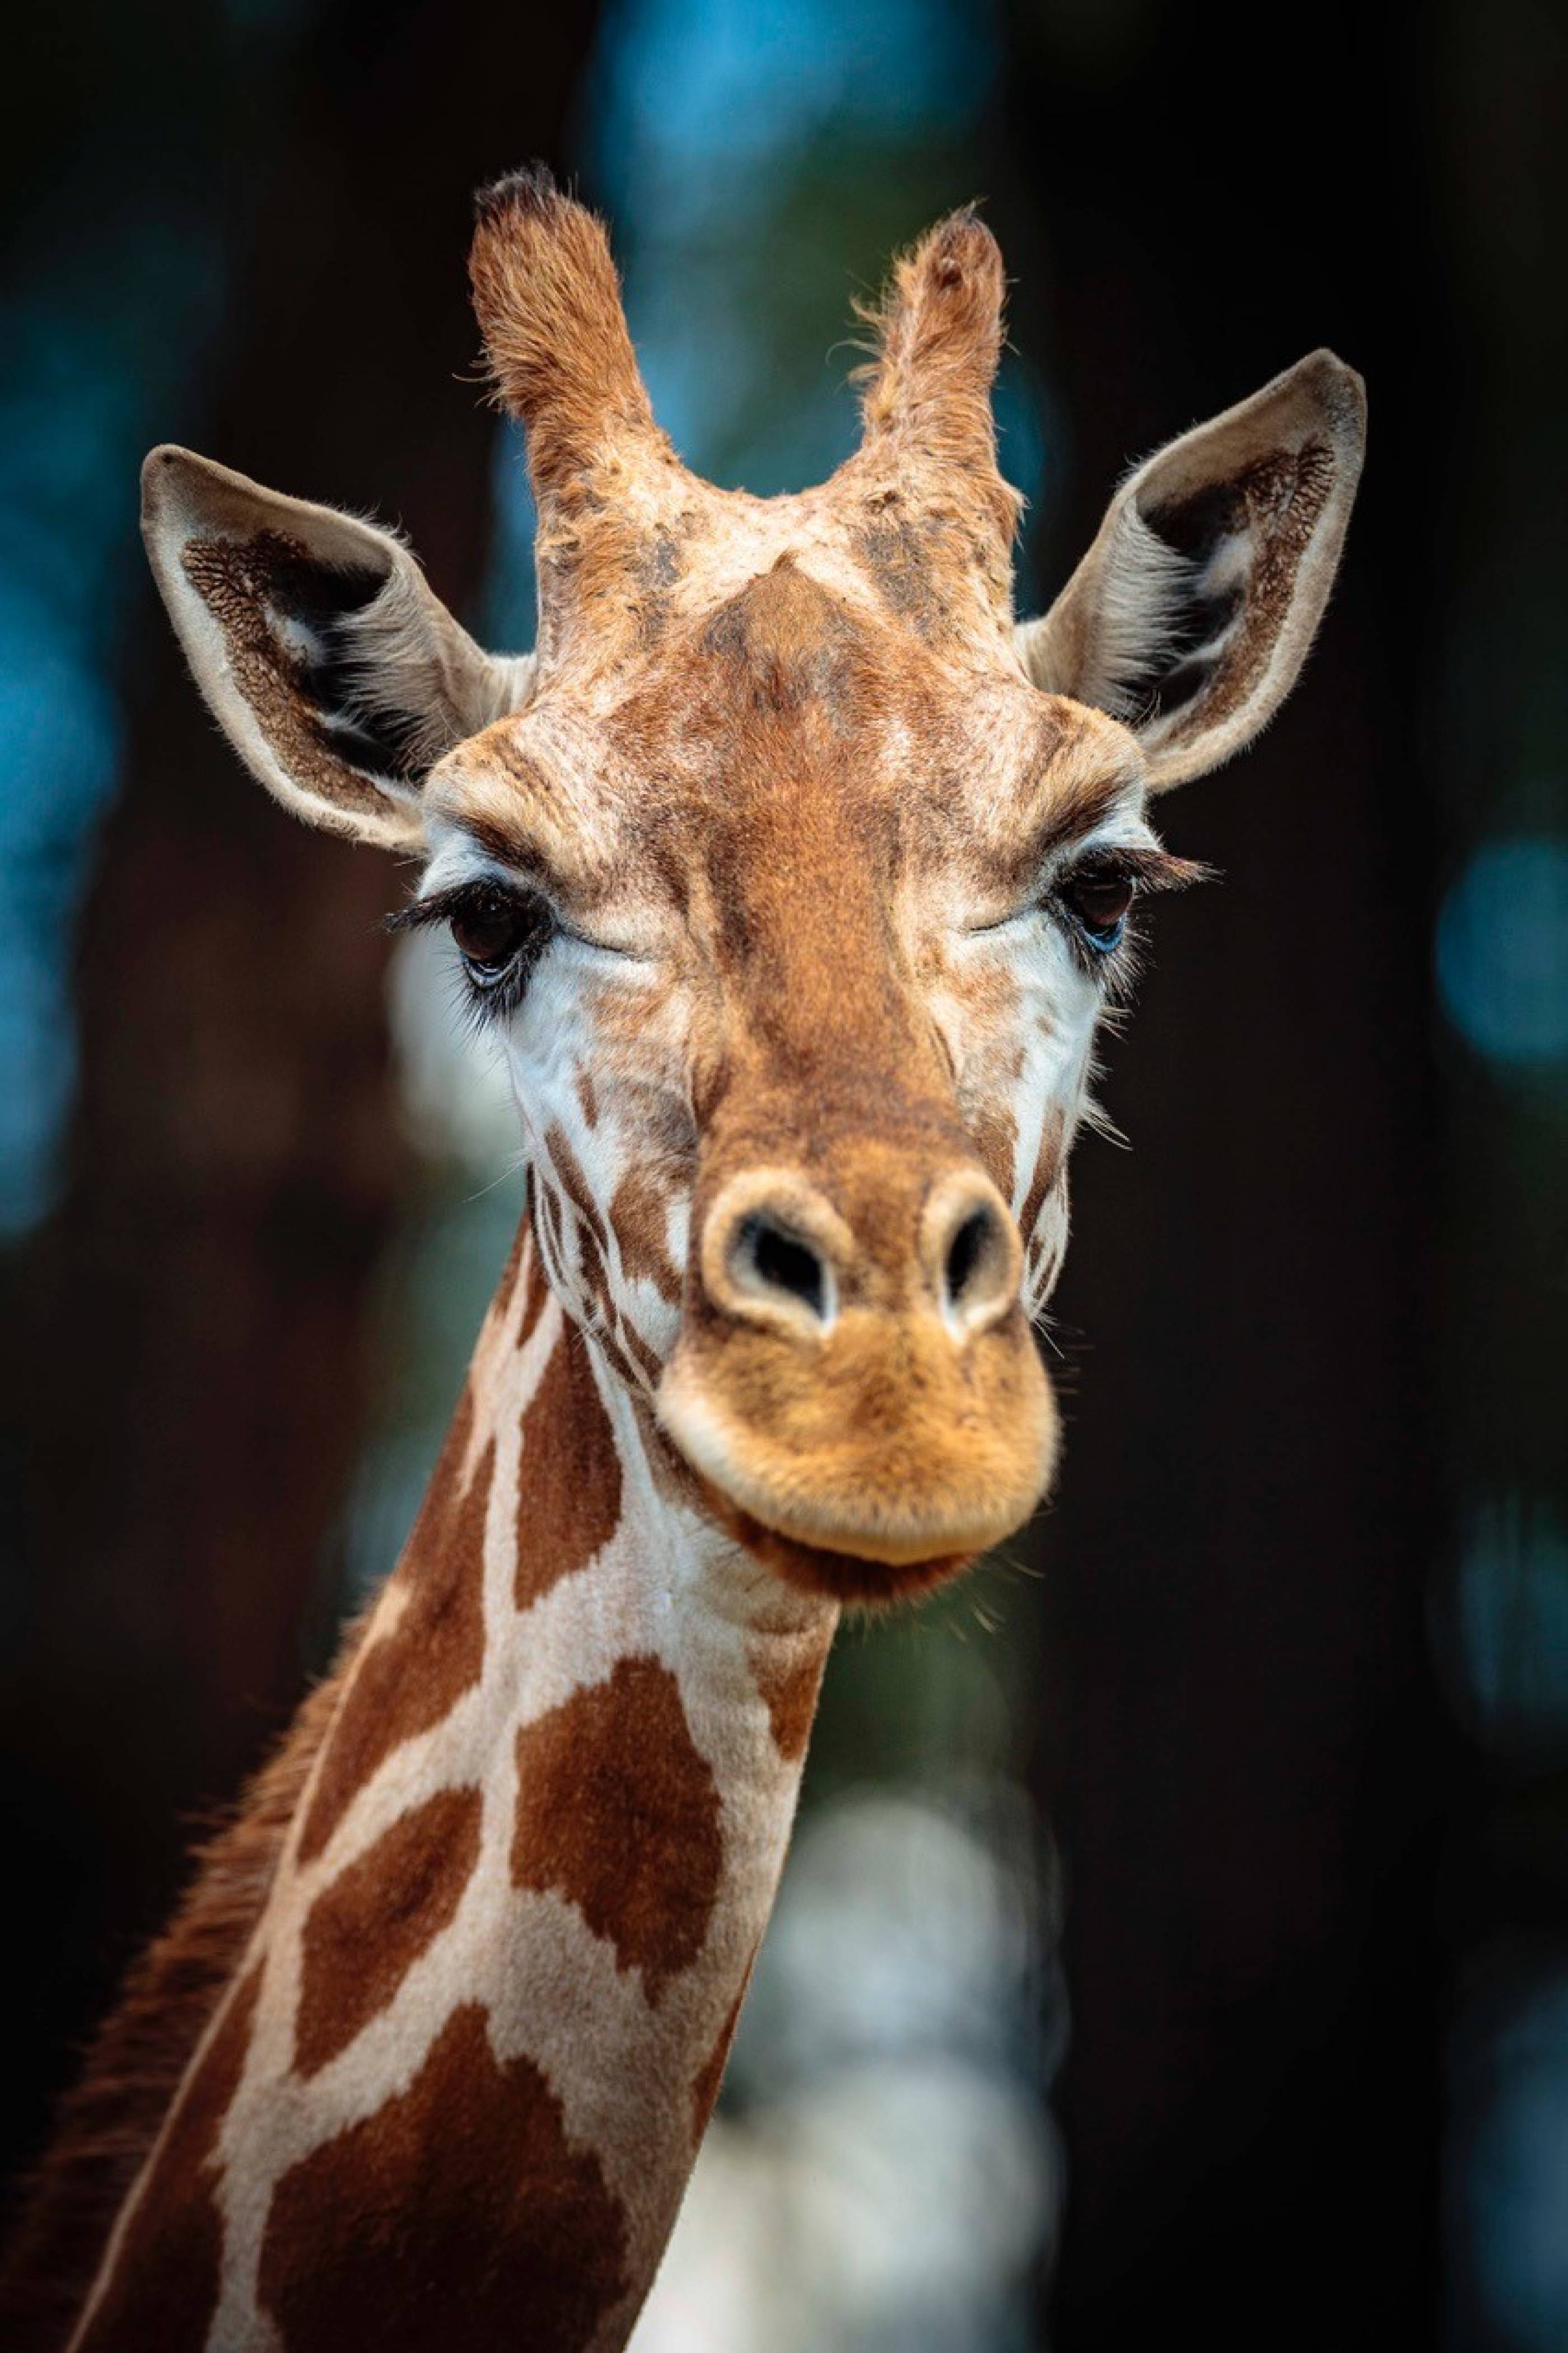 Mutangi the Giraffe Photo: Bobby-Jo Vial